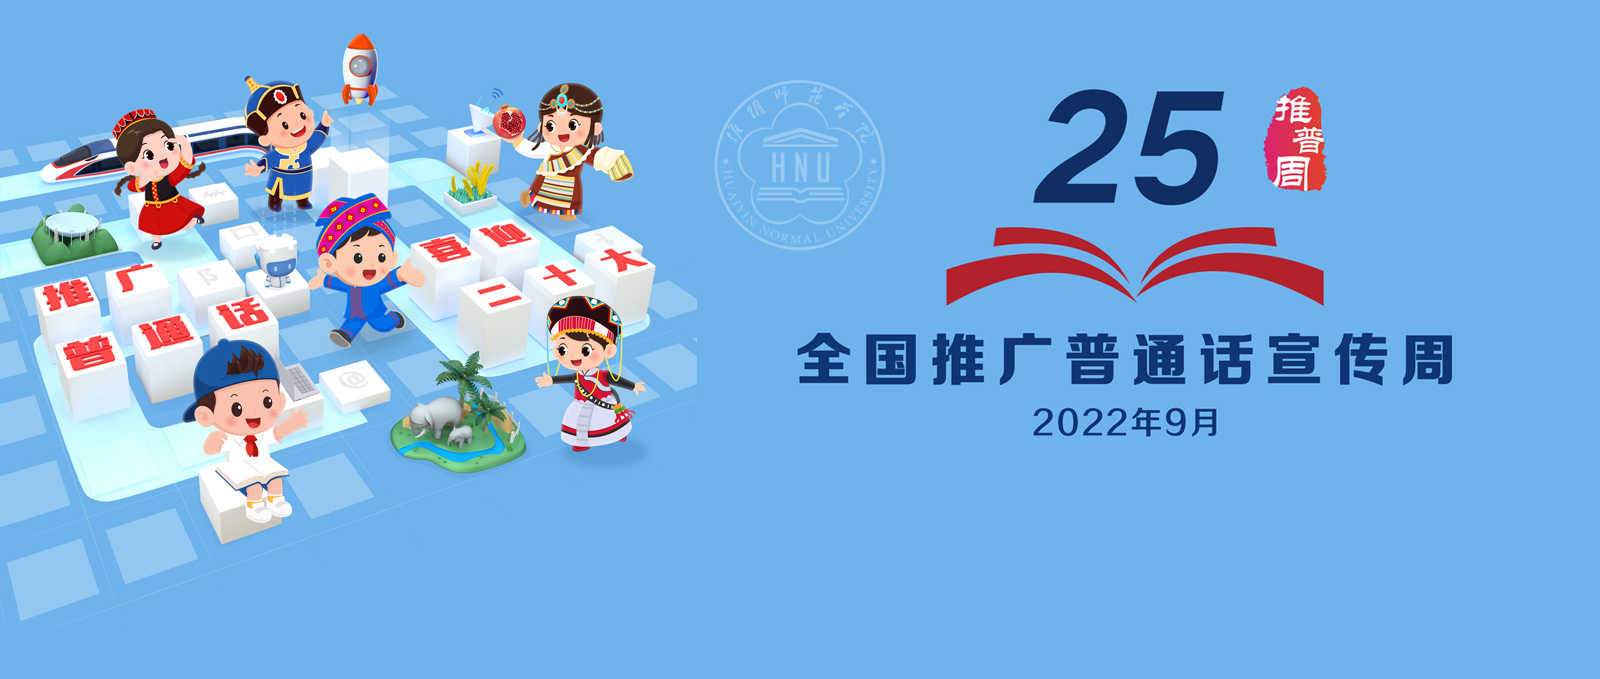 第25届全国推广普通话宣传周